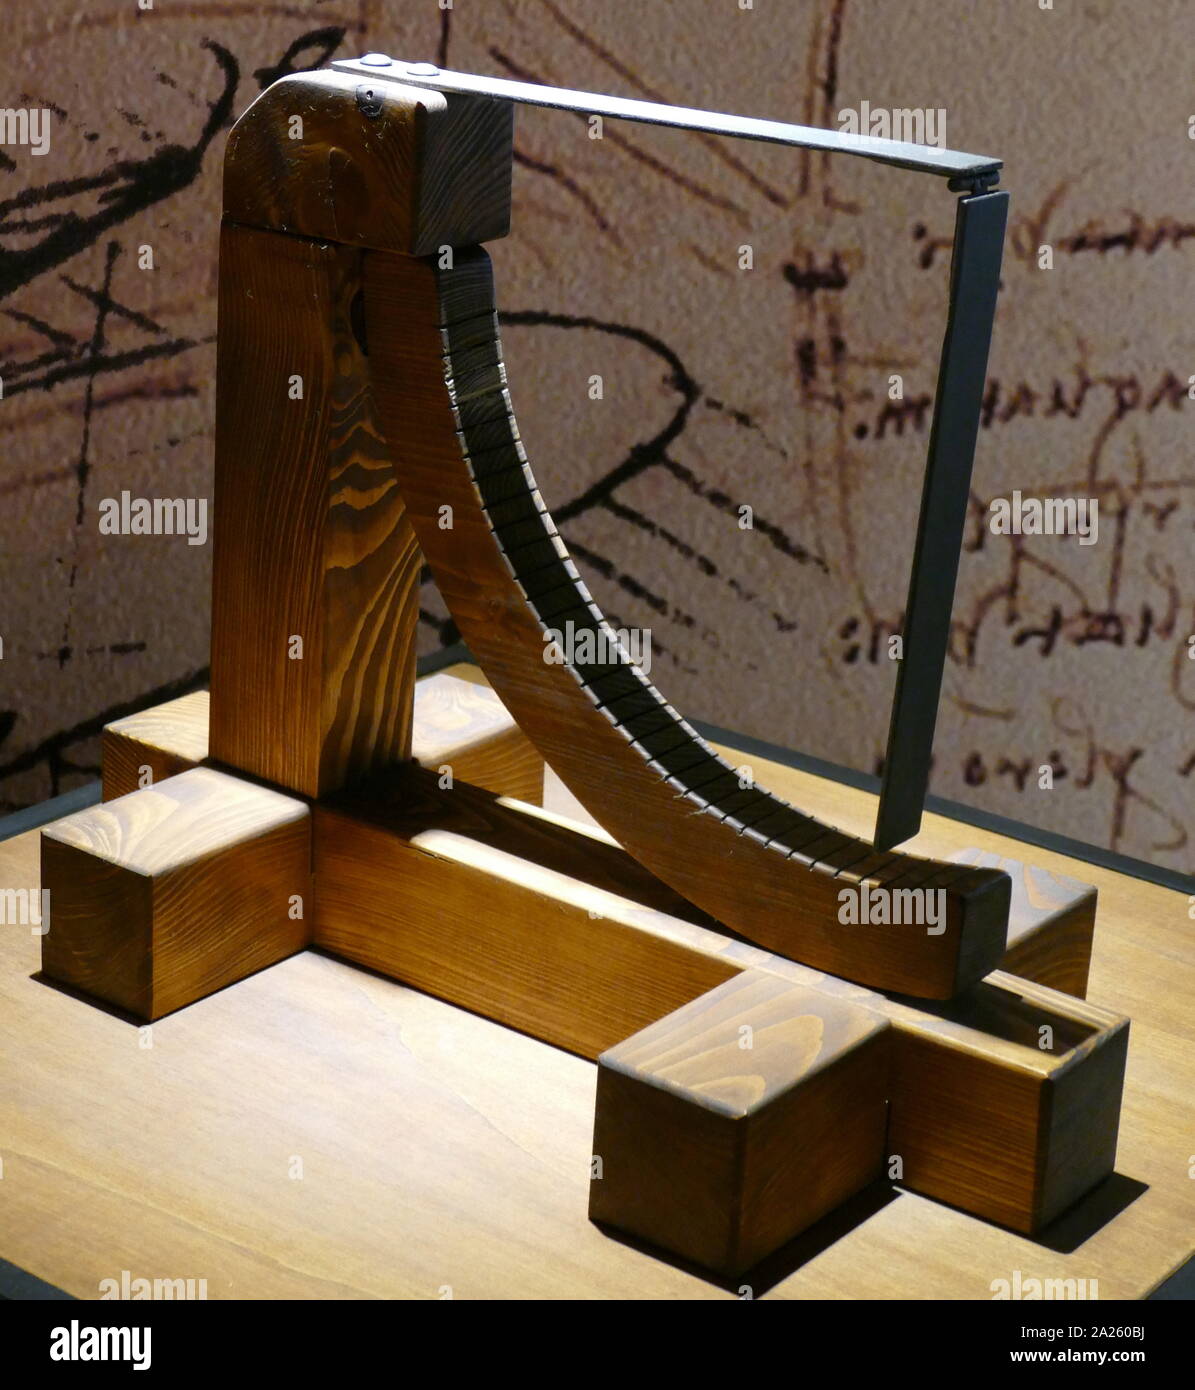 Modelo de un anemómetro, utilizado para determinar la velocidad del viento;  sobre la base de un dibujo de Leonardo da Vinci (1452-1519), artista  italiano y polímata; Codex Arundel folio 249 v Fotografía